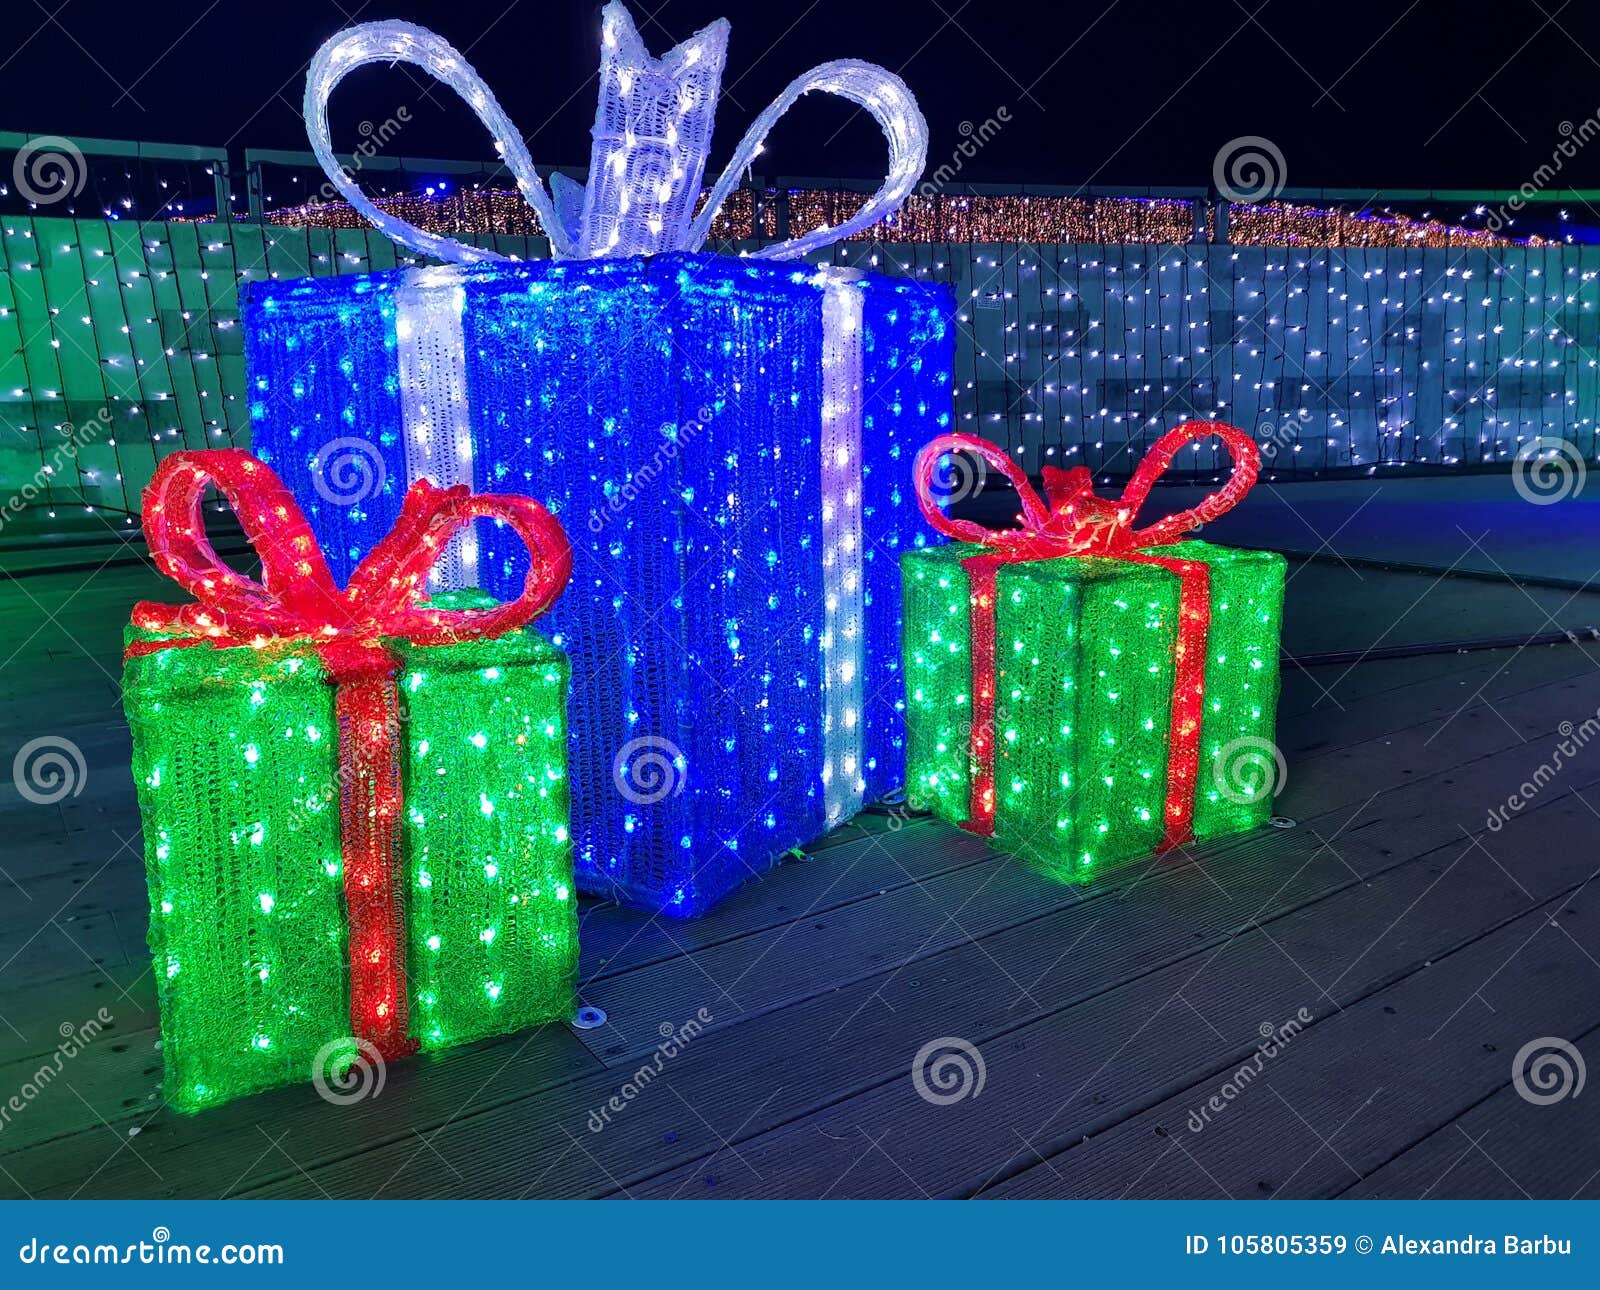 Caja De Regalo De Las Luces De La Navidad, Presentes Iluminados En La Noche  Imagen de archivo - Imagen de cinta, brillante: 105805359